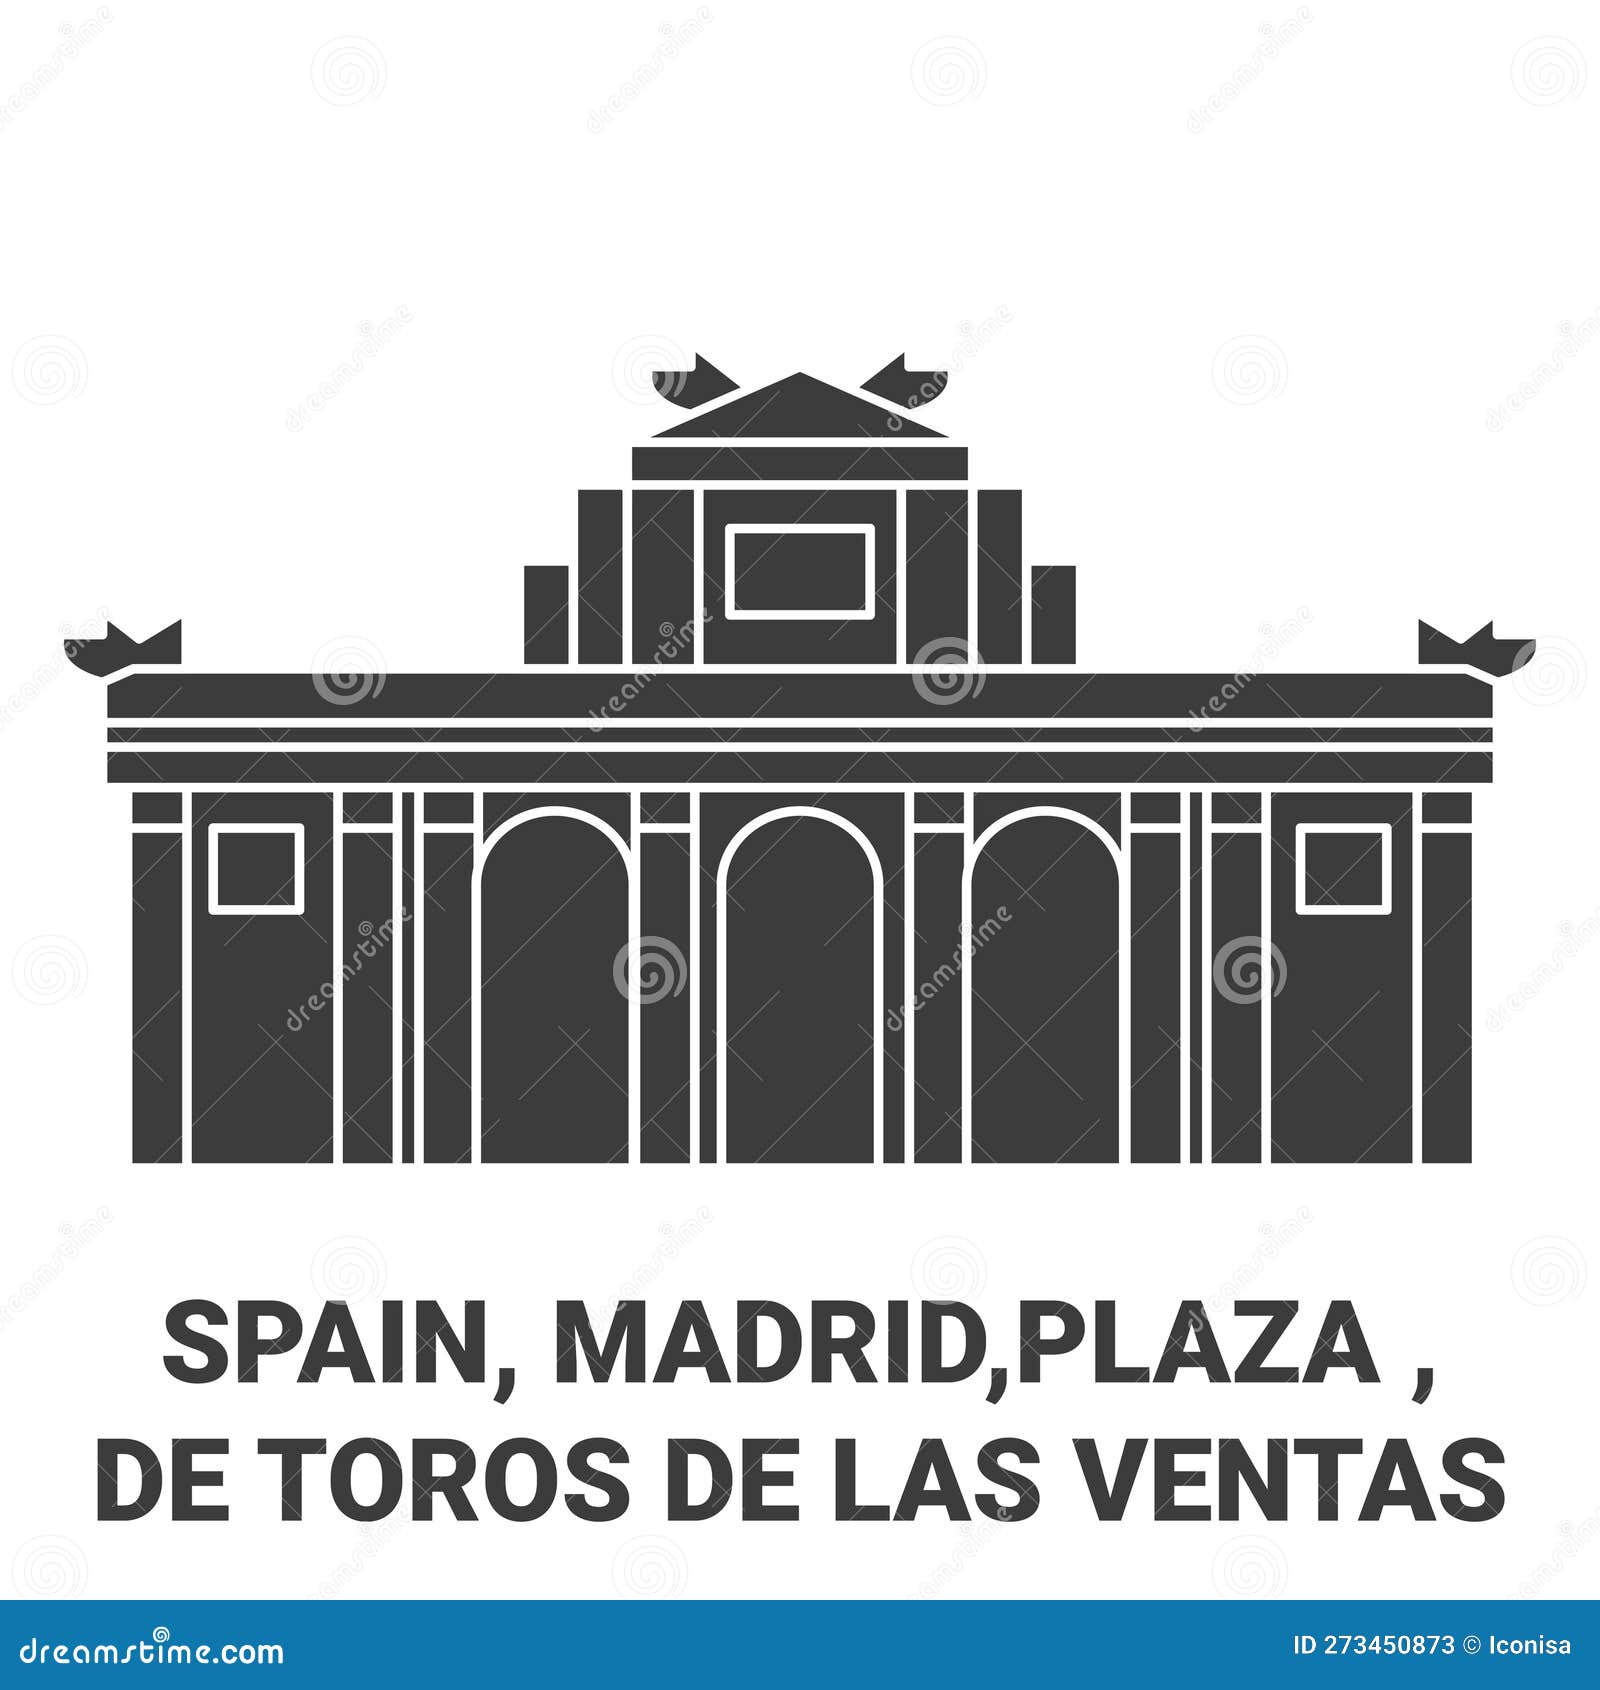 spain, madrid, plaza de toros de las ventas travel landmark  